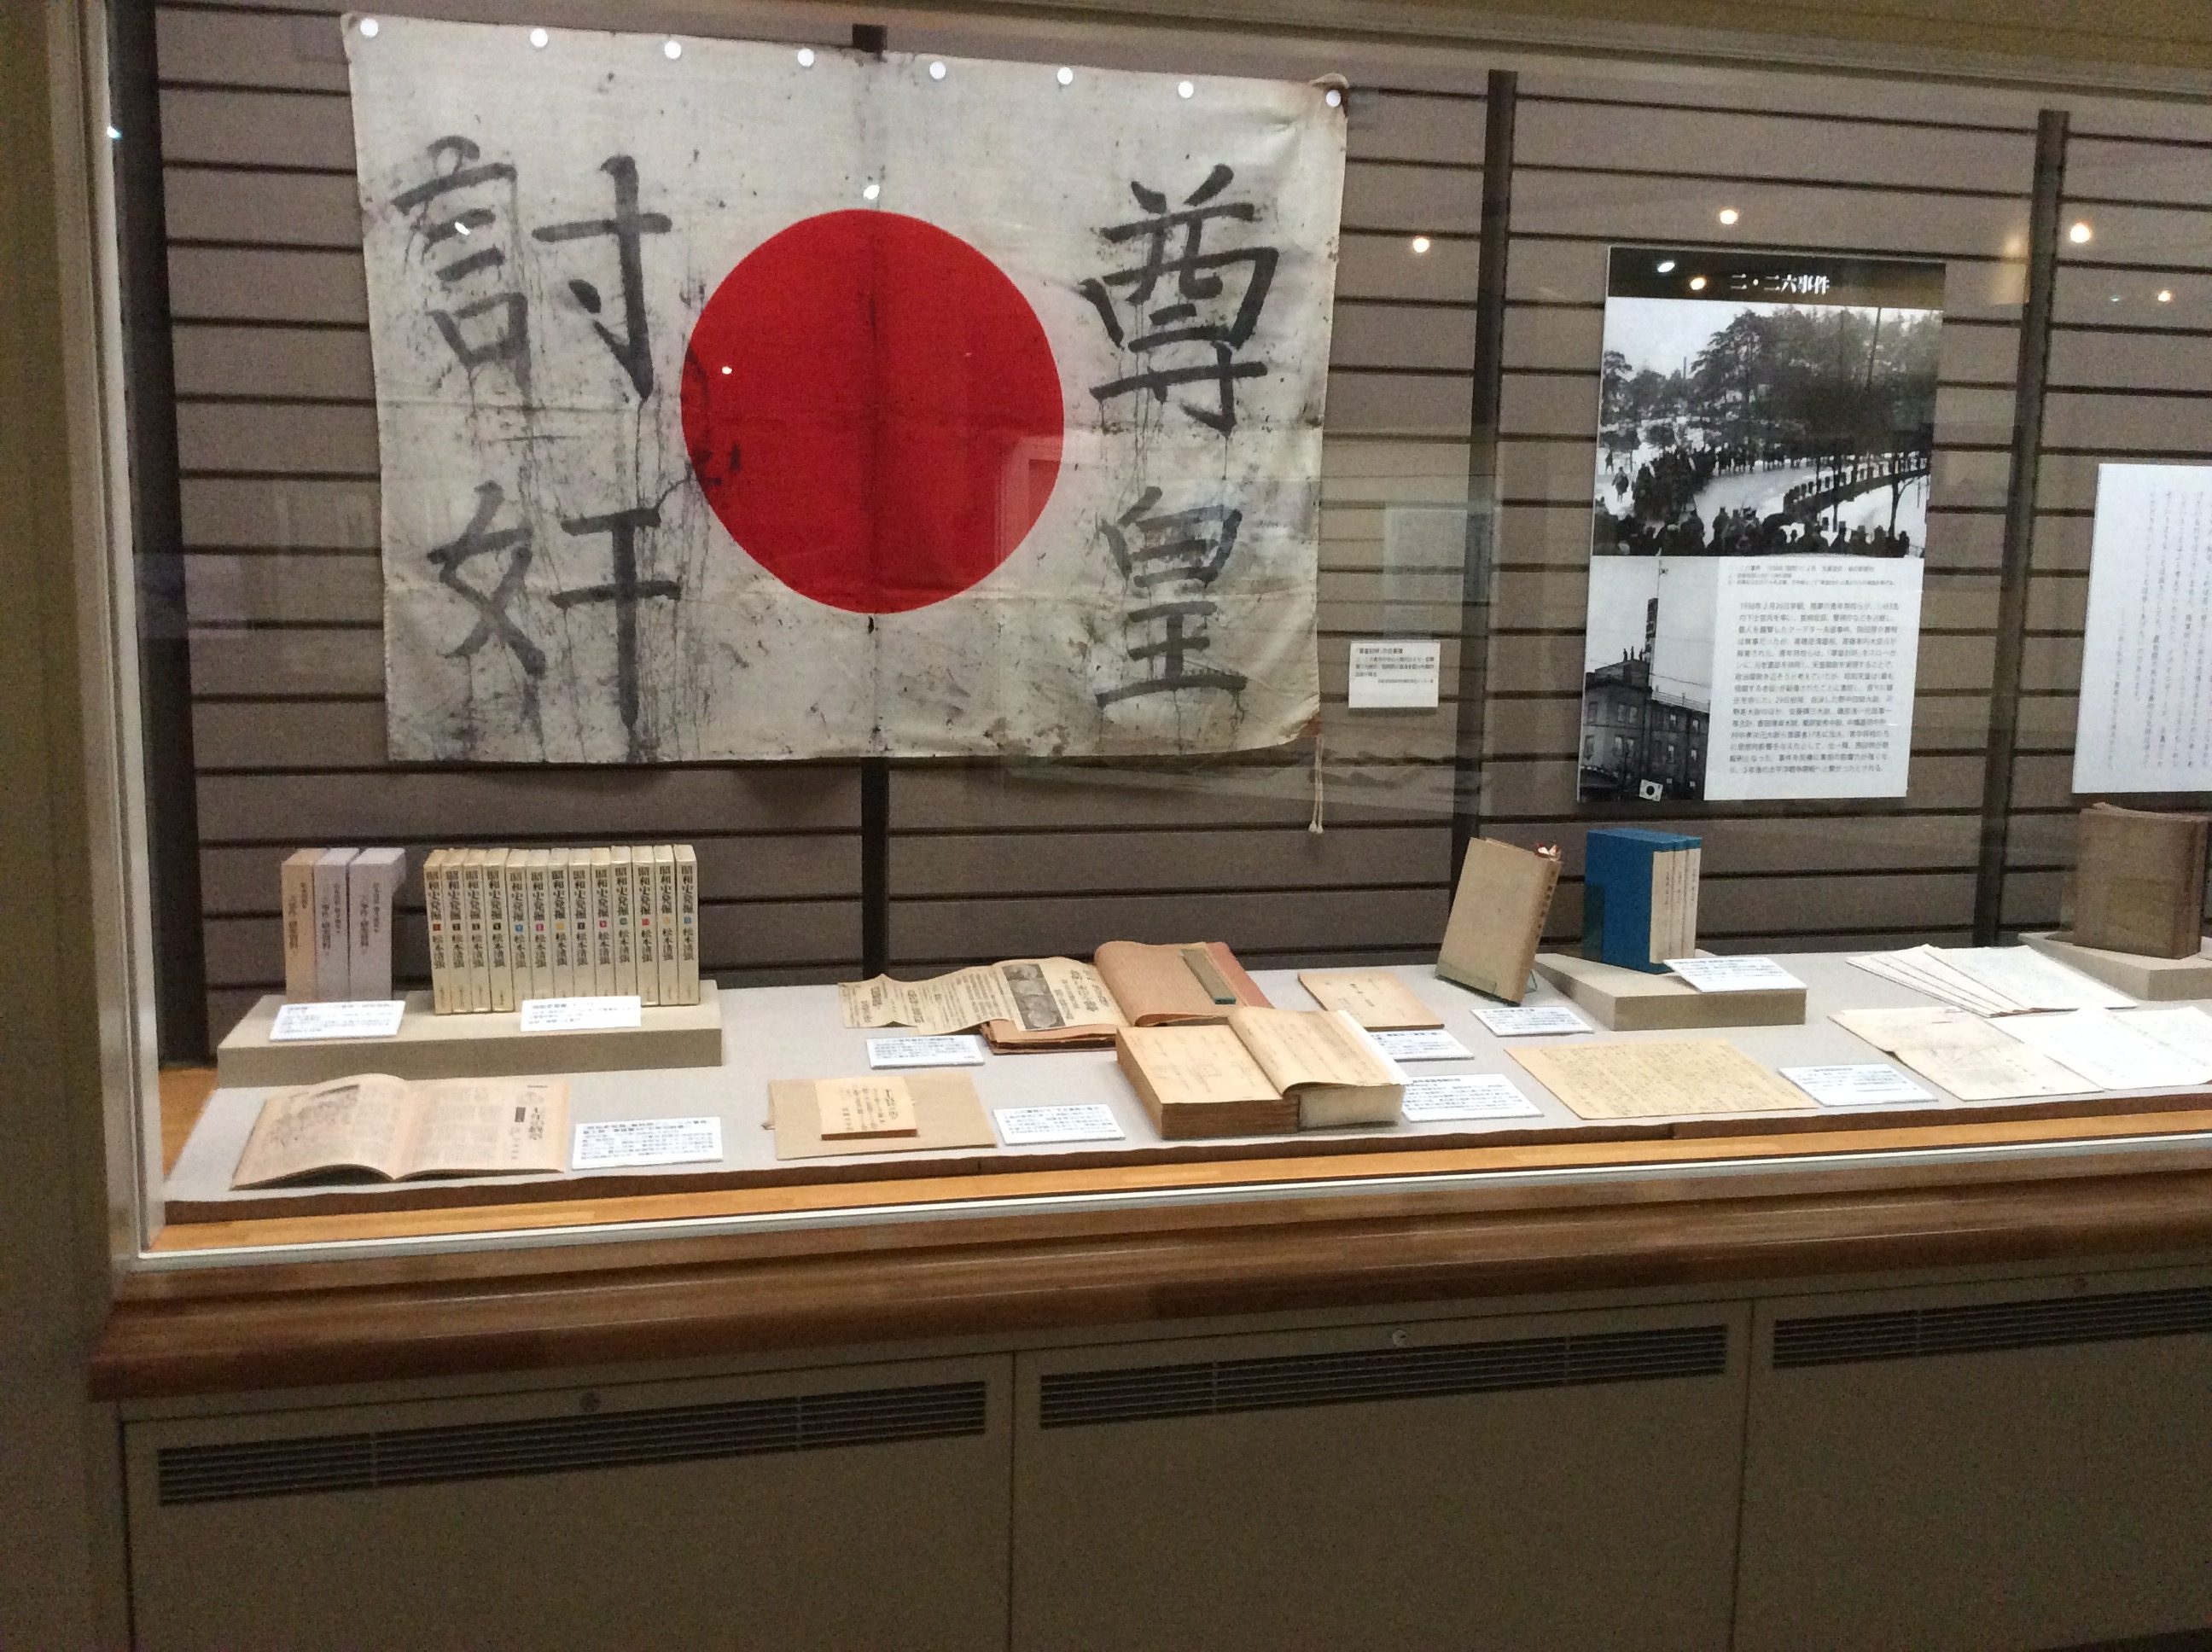 神奈川近代文学館 226事件で使用された尊王討奸の旗などの展示 – 2.26 